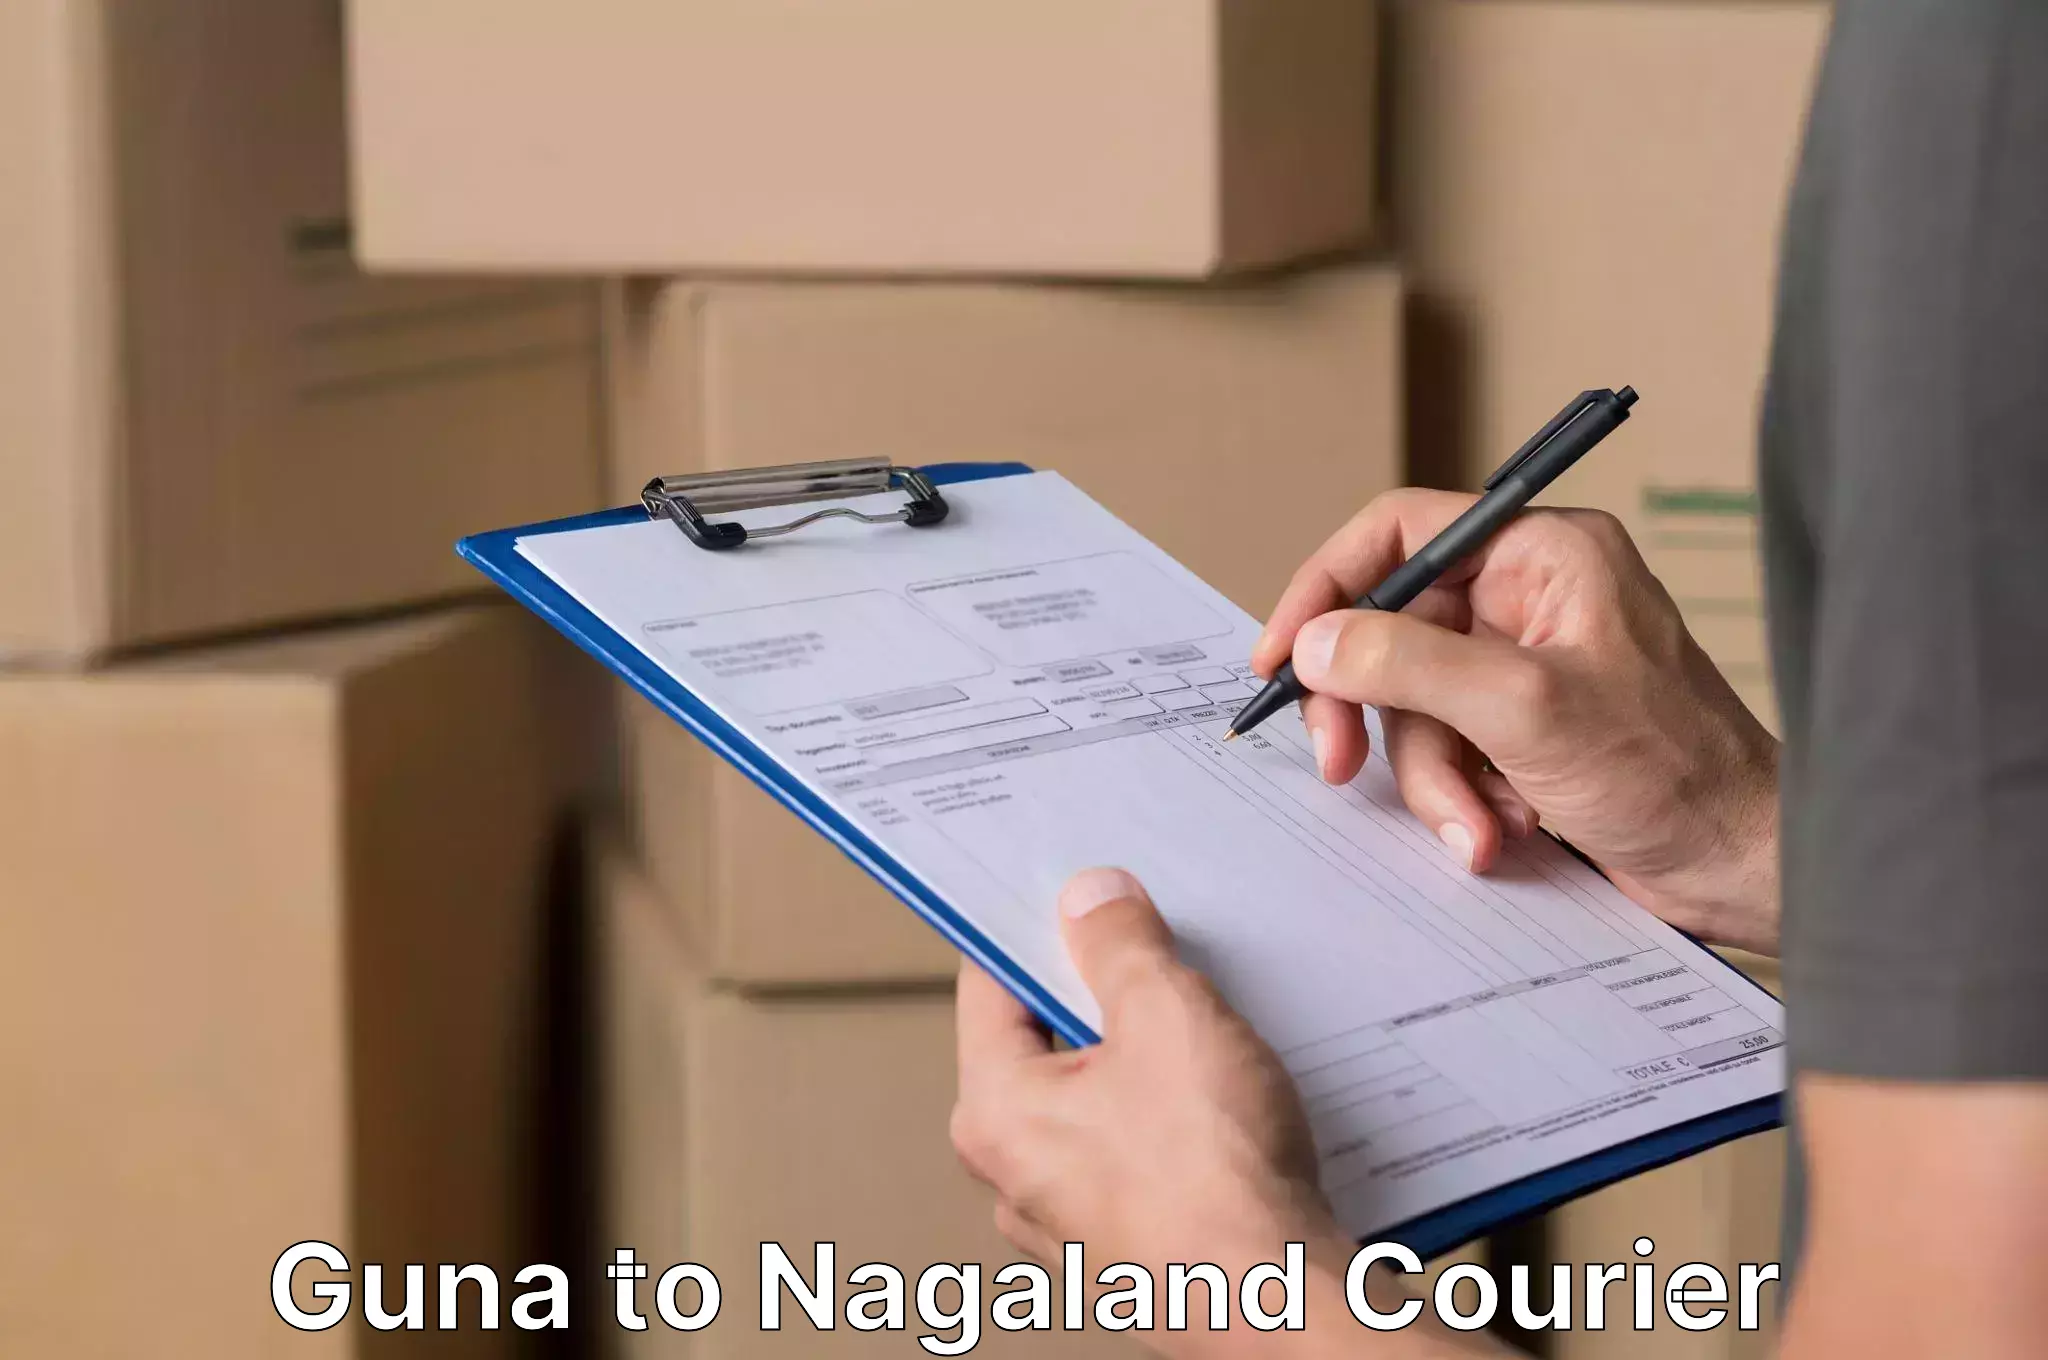 Stress-free moving Guna to NIT Nagaland